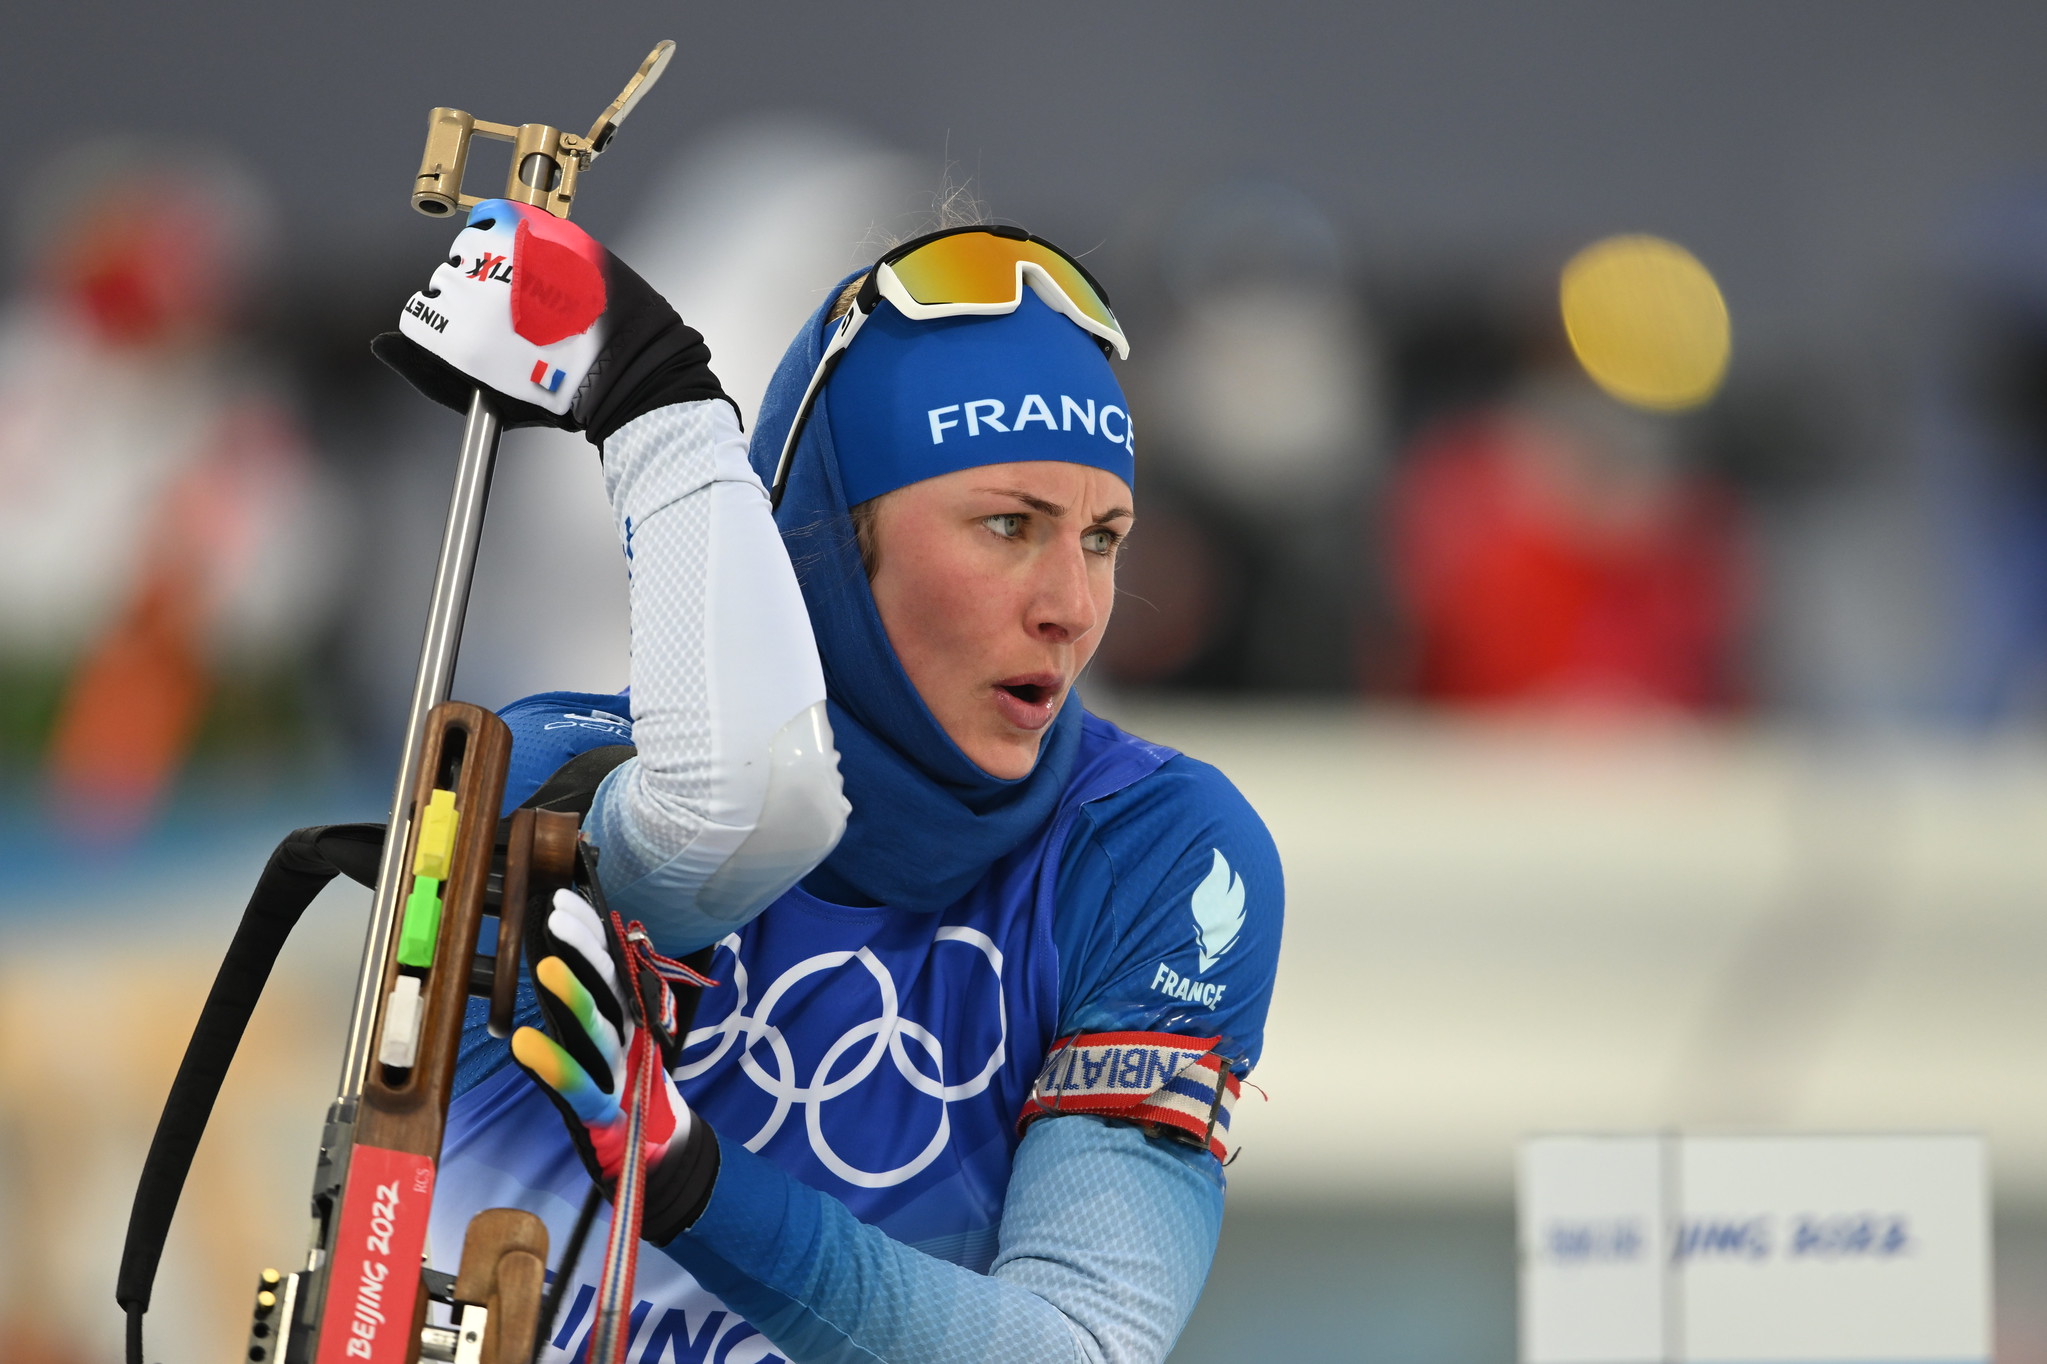 La France avait rendez-vous avec le relai femme en biathlon des JO de Pékin